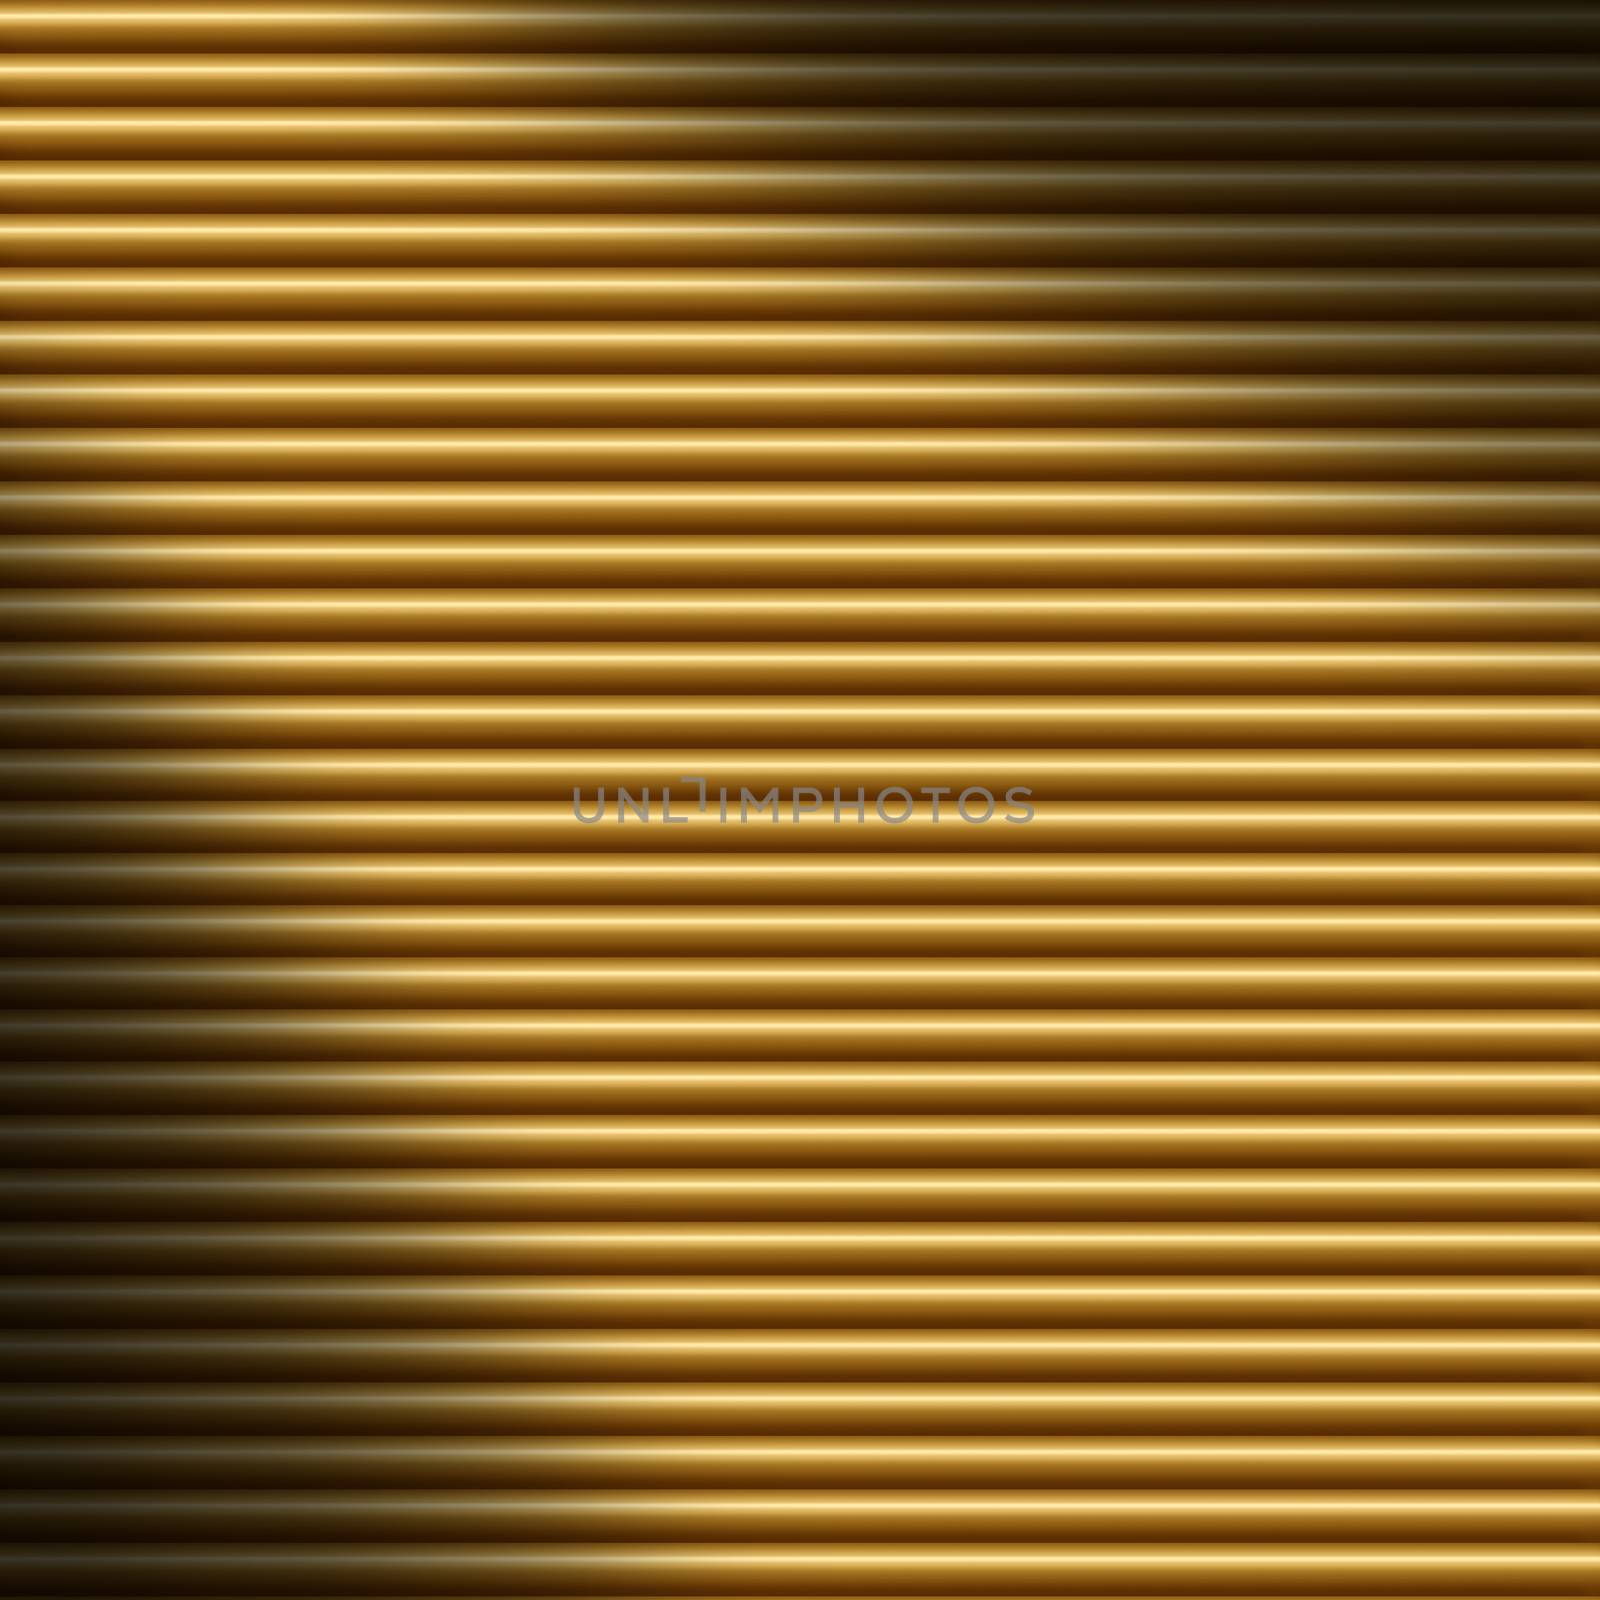 Horizontal gold tube background texture, lit diagonally